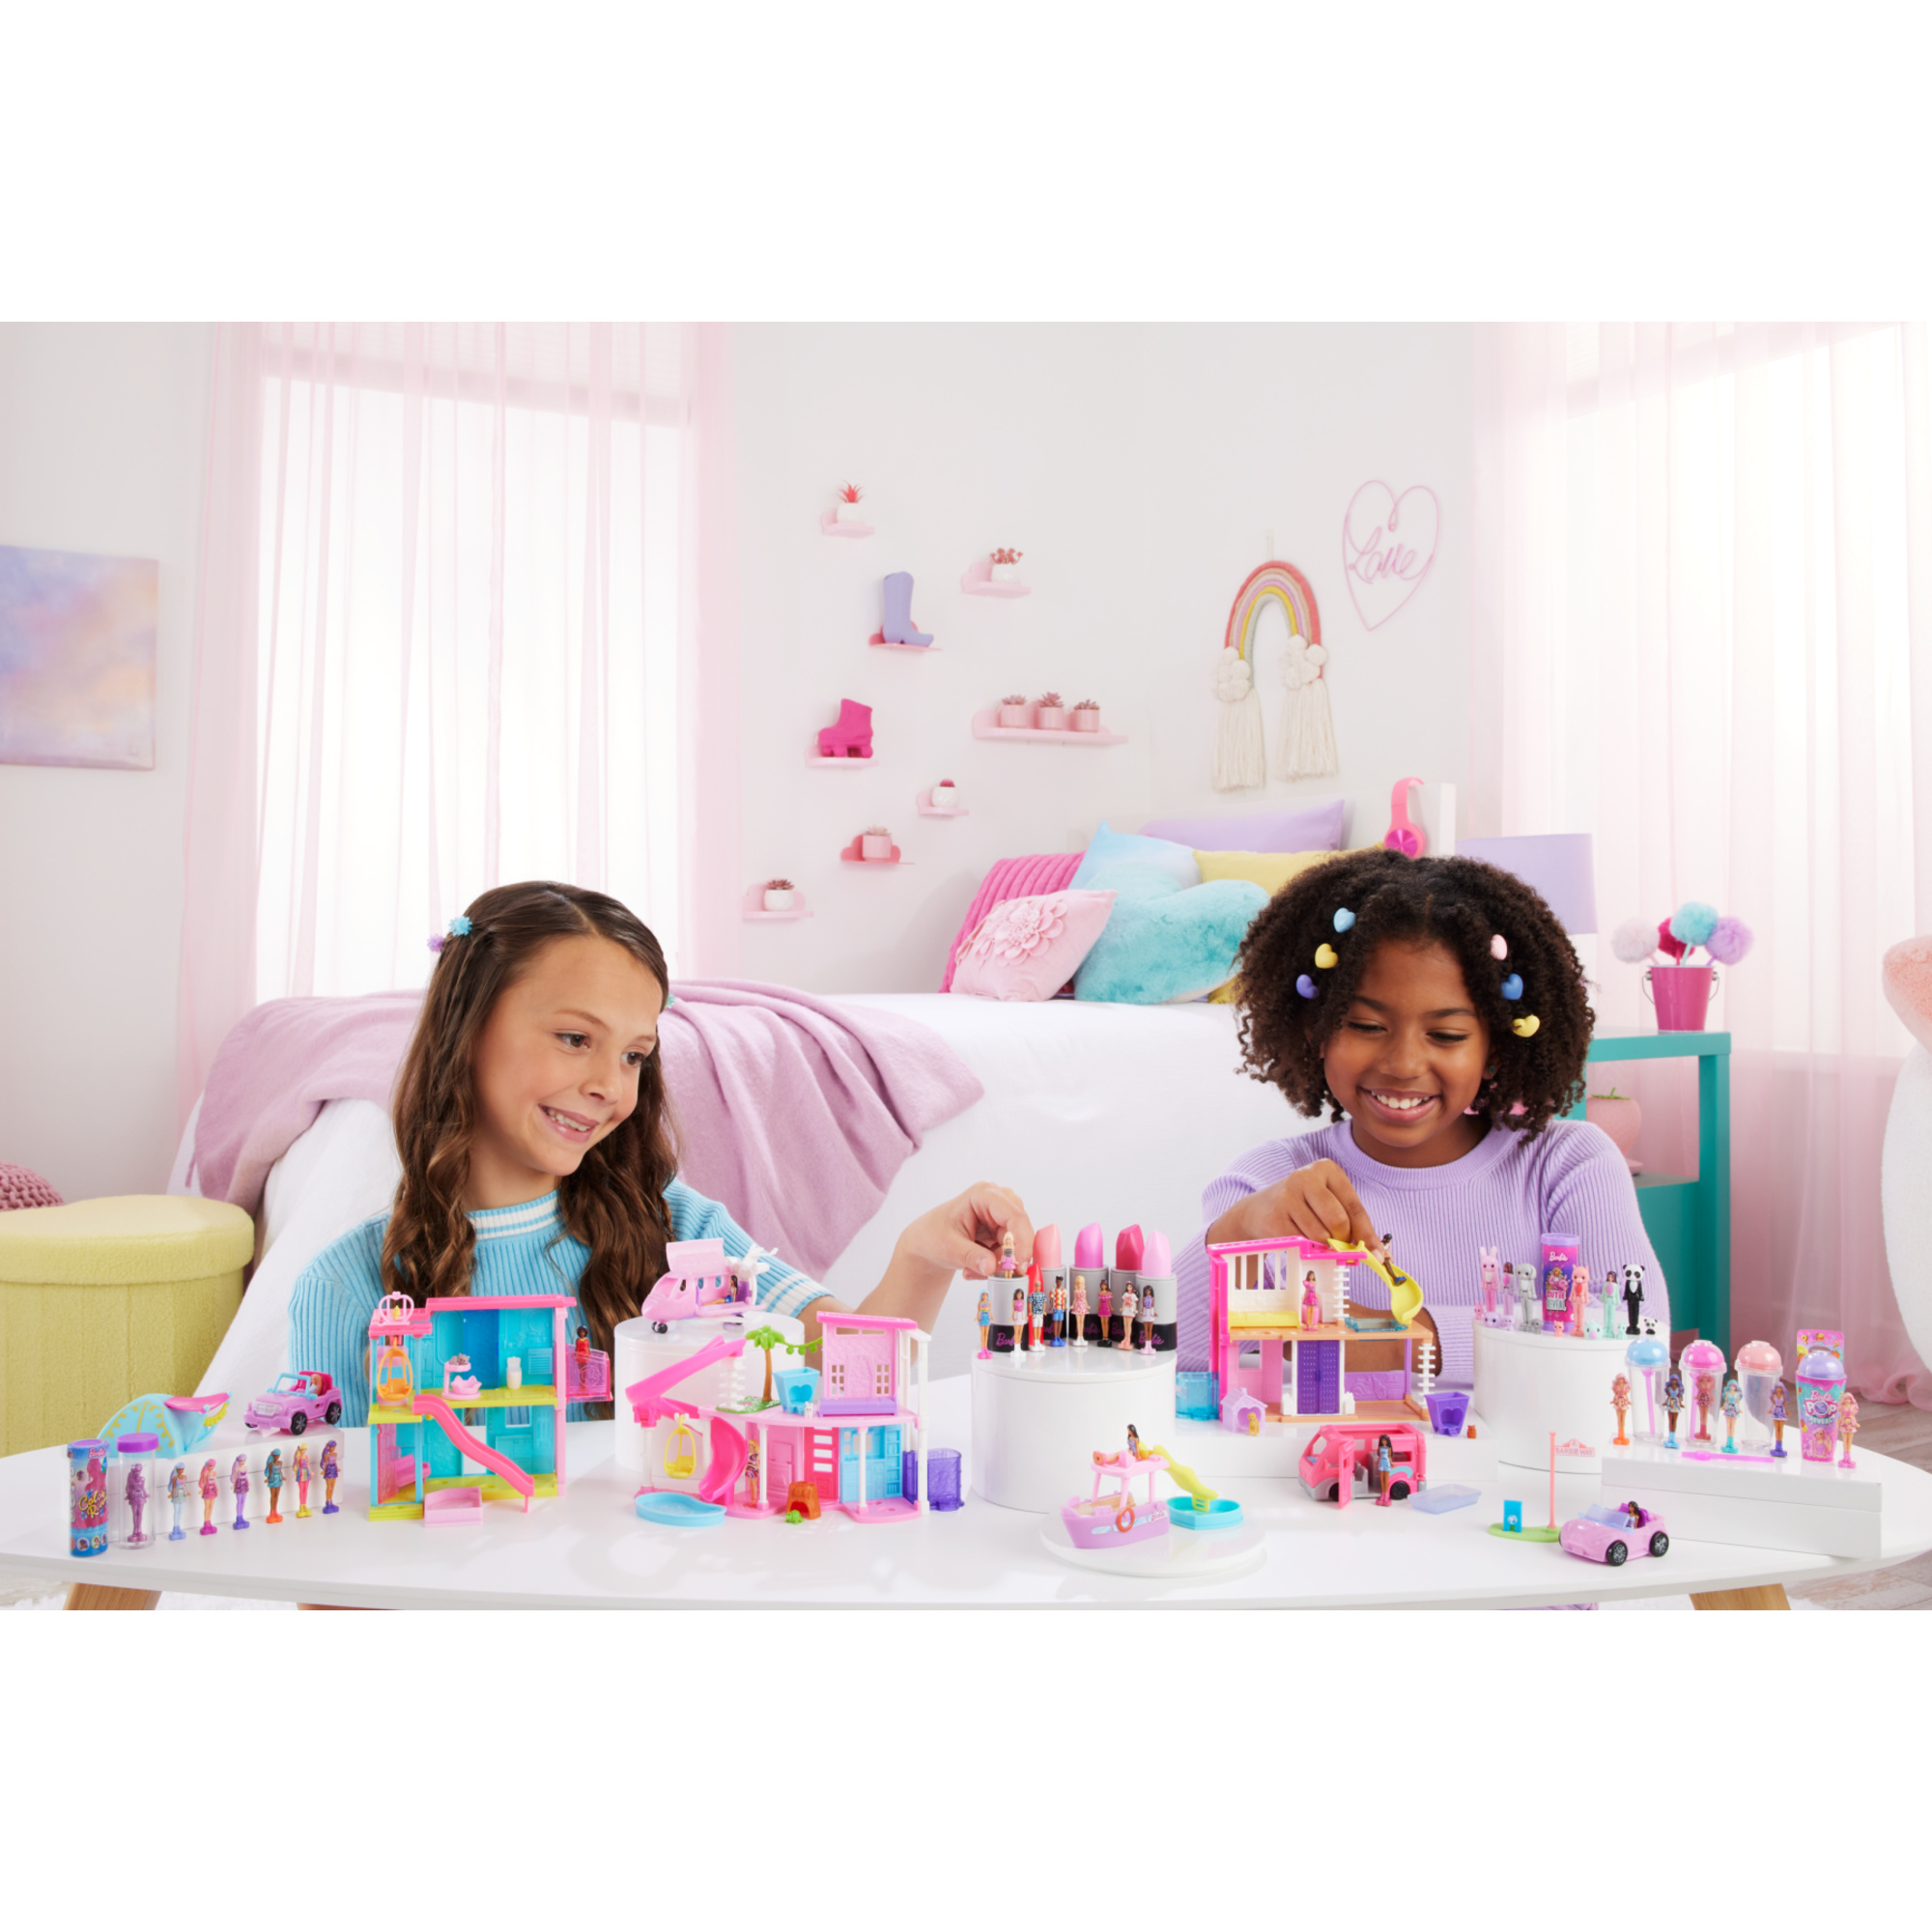 Mini barbieland - pop reveal - mini bambola con sorpresa e gioco sensoriale - Barbie